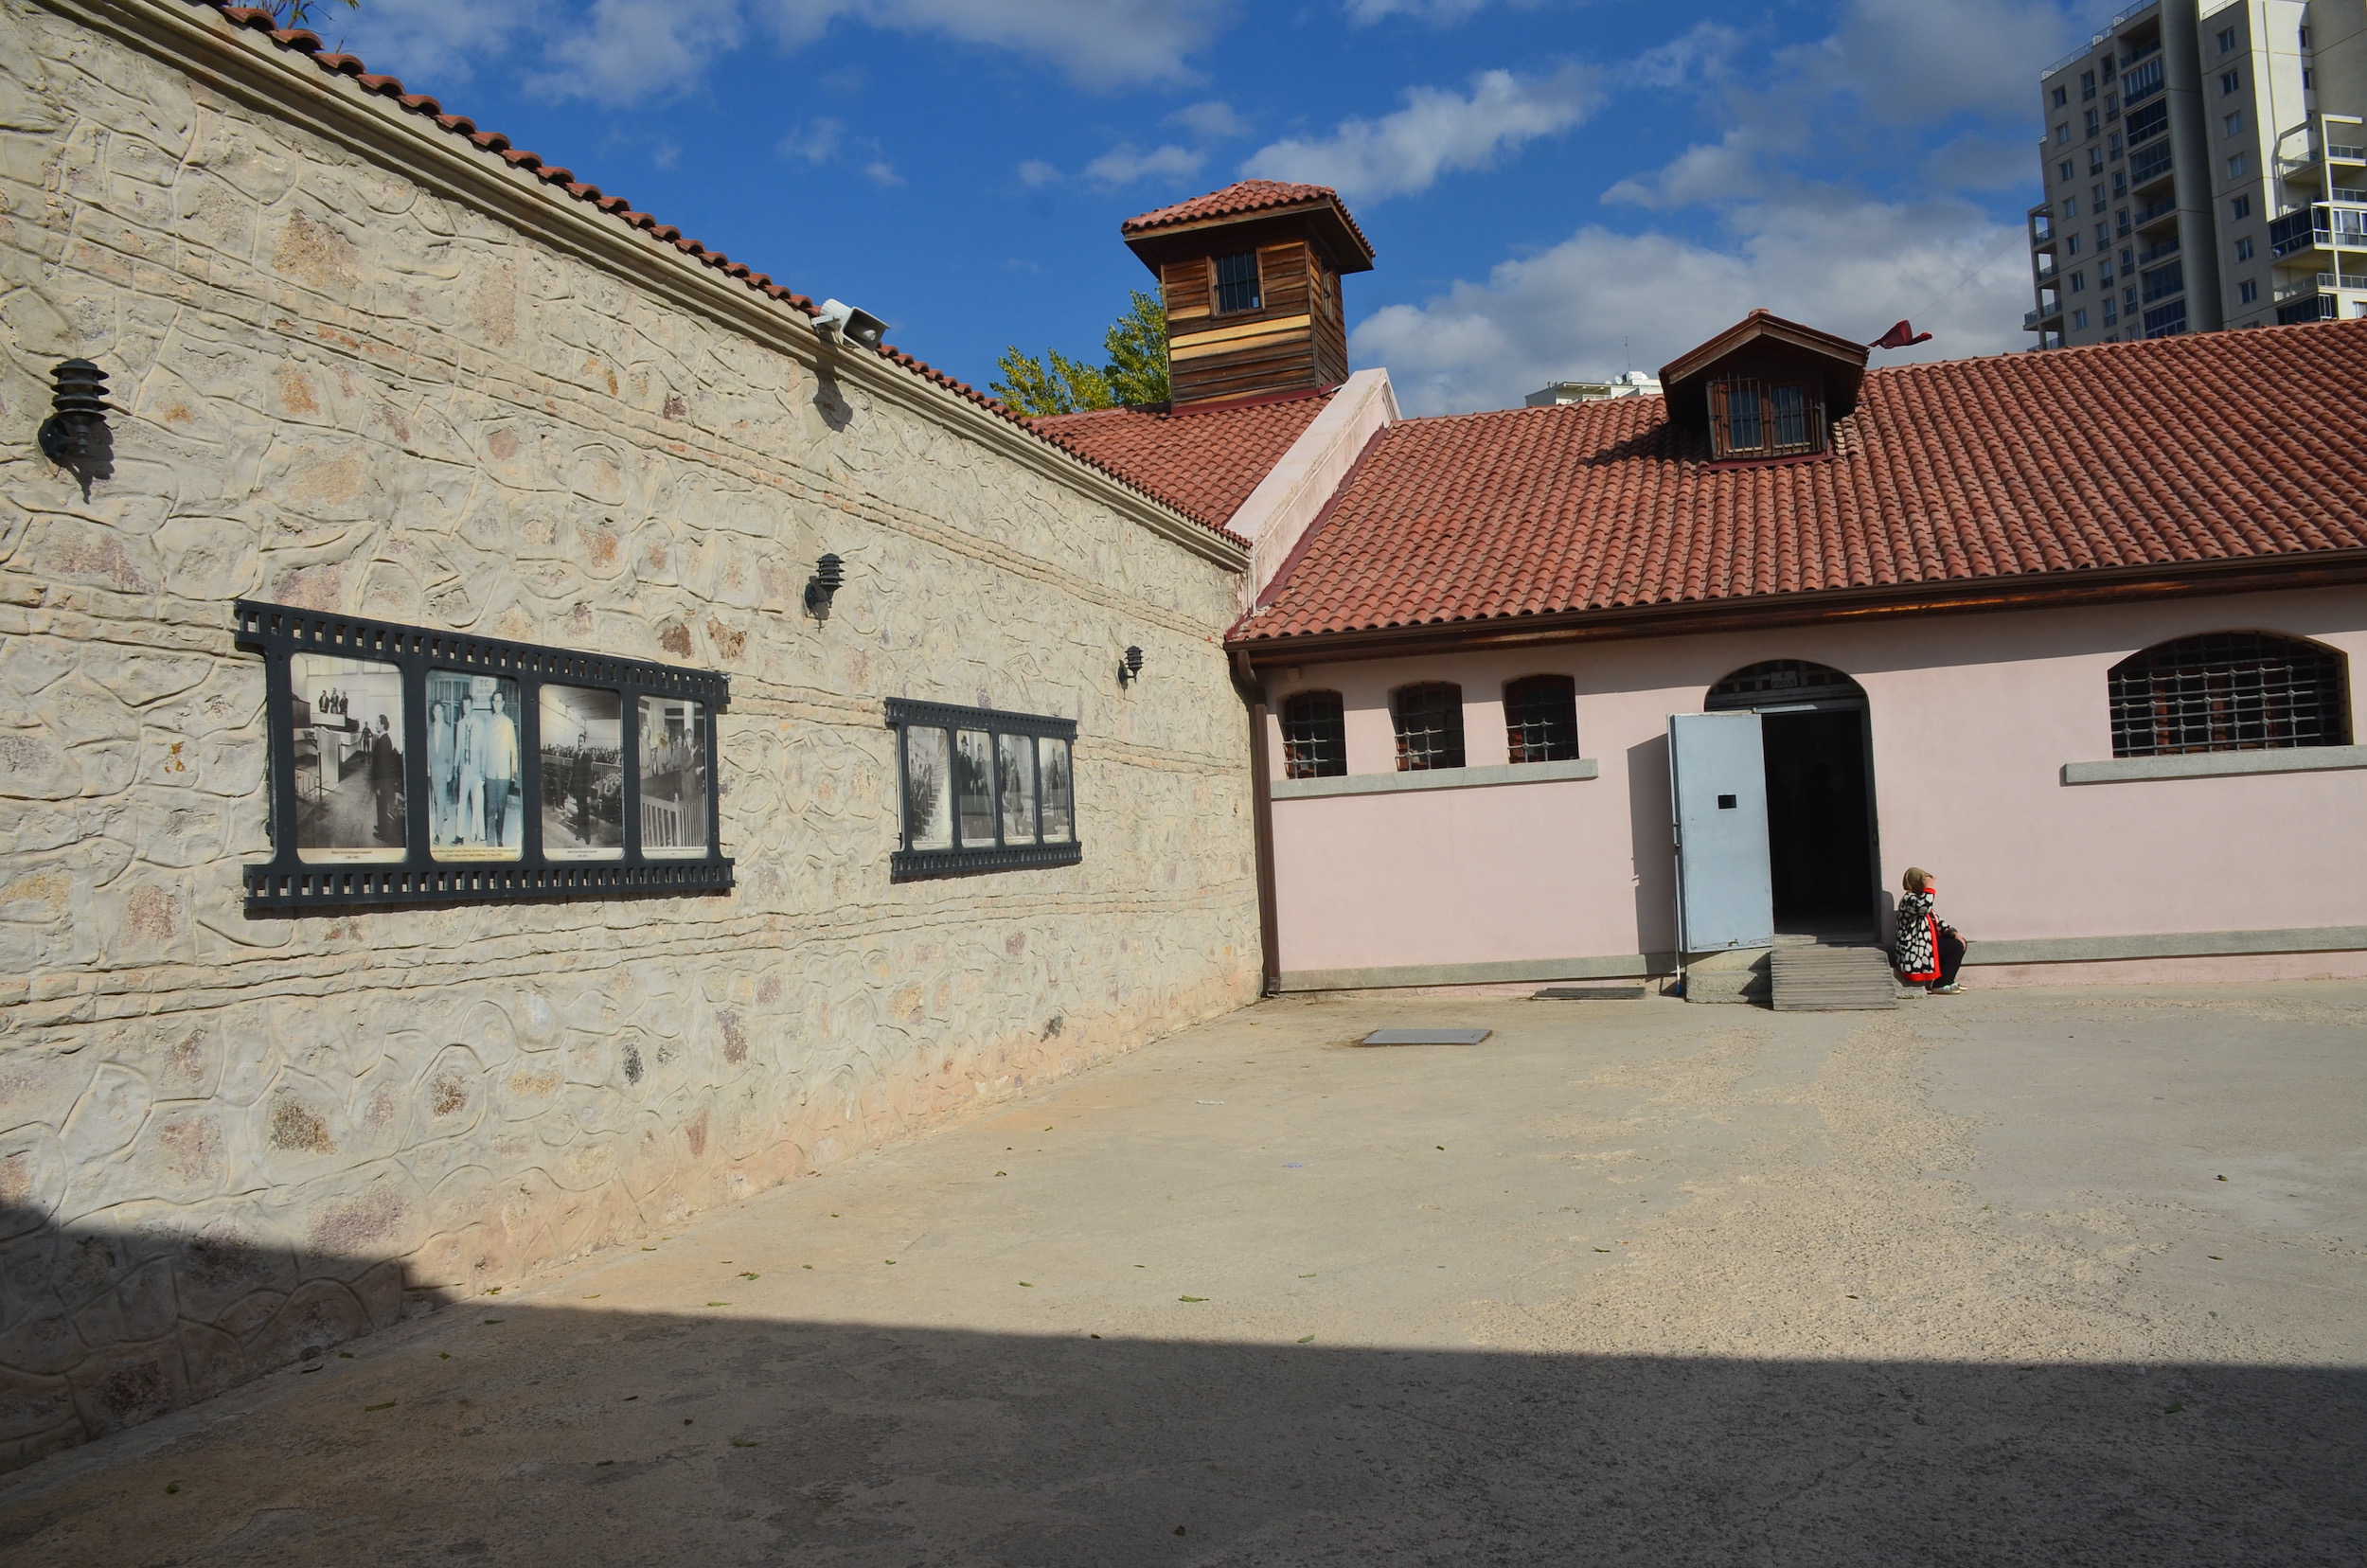 6th Ward courtyard at Ulucanlar Prison in Ankara, Turkey